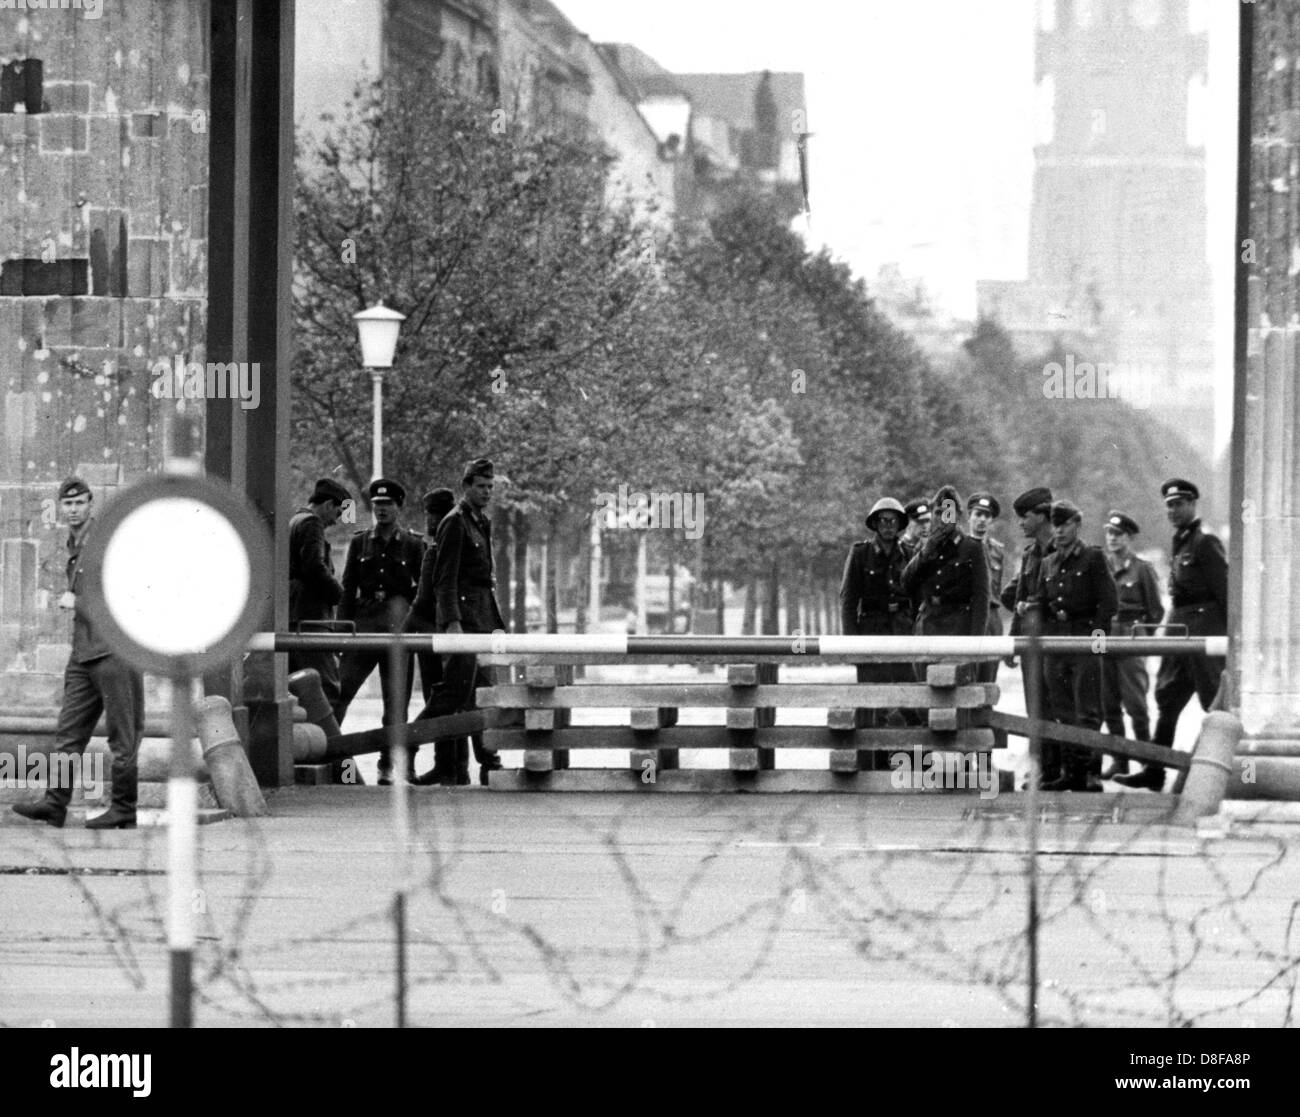 Die Barrikade am Brandenburger Tor in Berlin am 9.9.1961. Die fünf Durchfahrten, die durch das Brandenburger Tor führen, wurden am 9.9.1961 verbarrikadiert. Gegen 15.45 Uhr fuhren vier Lkws der Volkspolizei vor. Unter der Aufsicht von mehreren Offizieren luden etwa 30 Volkspolizisten Betonbalken ab, die kreuzweise in die Durchfahrten des Brandenburger Tores als Barrikade aufgestapelt wurden. Nur auf der südlichen Seite des Brandenburger Tores befindet sich jetzt noch eine etwa 40 Meter breite Lücke, die nur durch riesige Blumenschalen aus Beton, wie sie sich auch auf der nördlichen Seite befin Stock Photo